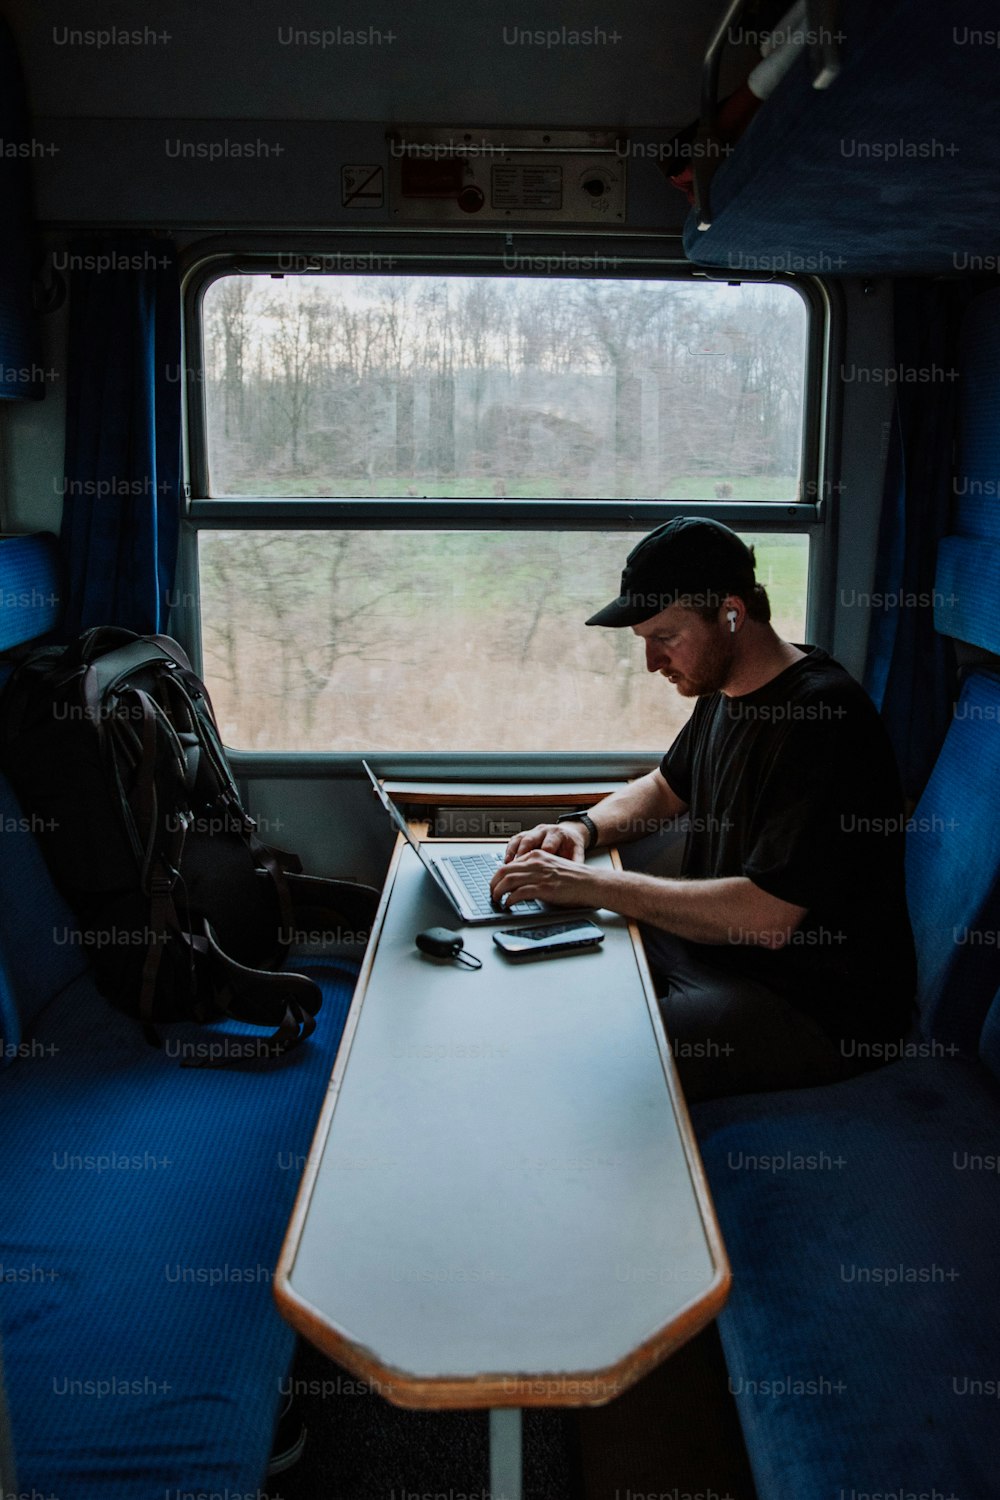 Un uomo seduto a un tavolo che utilizza un computer portatile